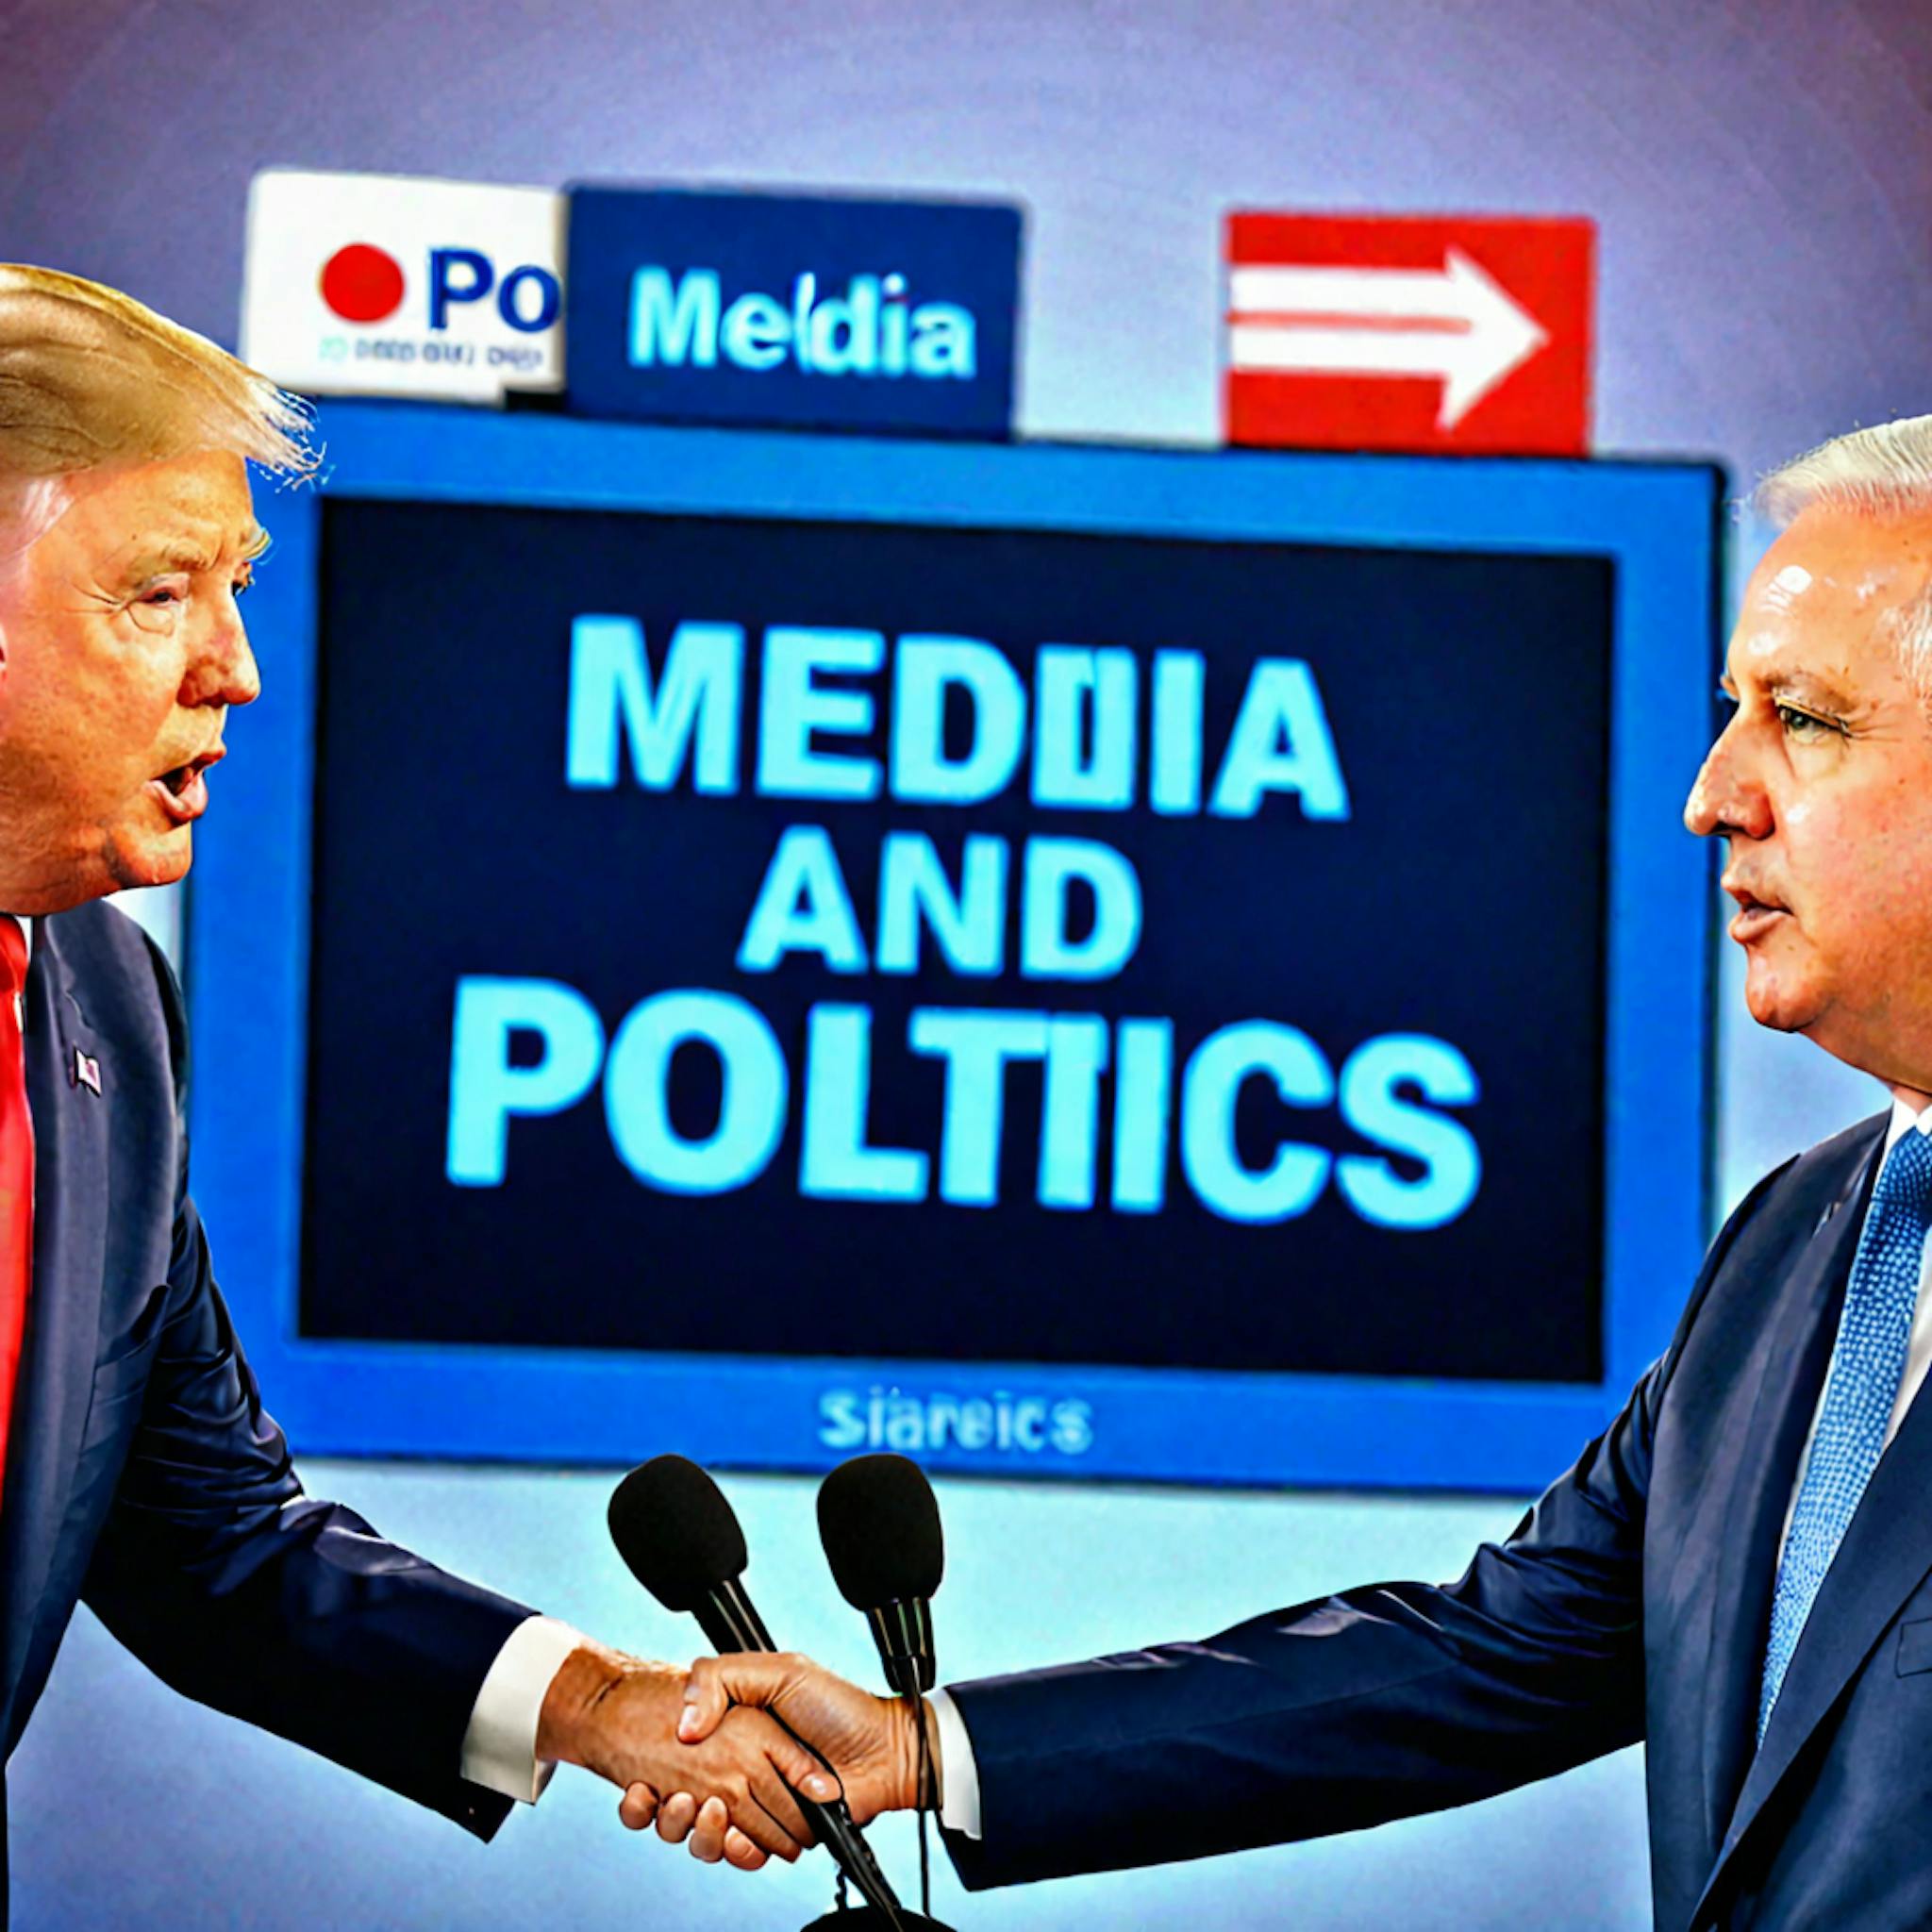 featured image - Classificação multilíngue da postura política grosseira da mídia: limitações e declaração de ética